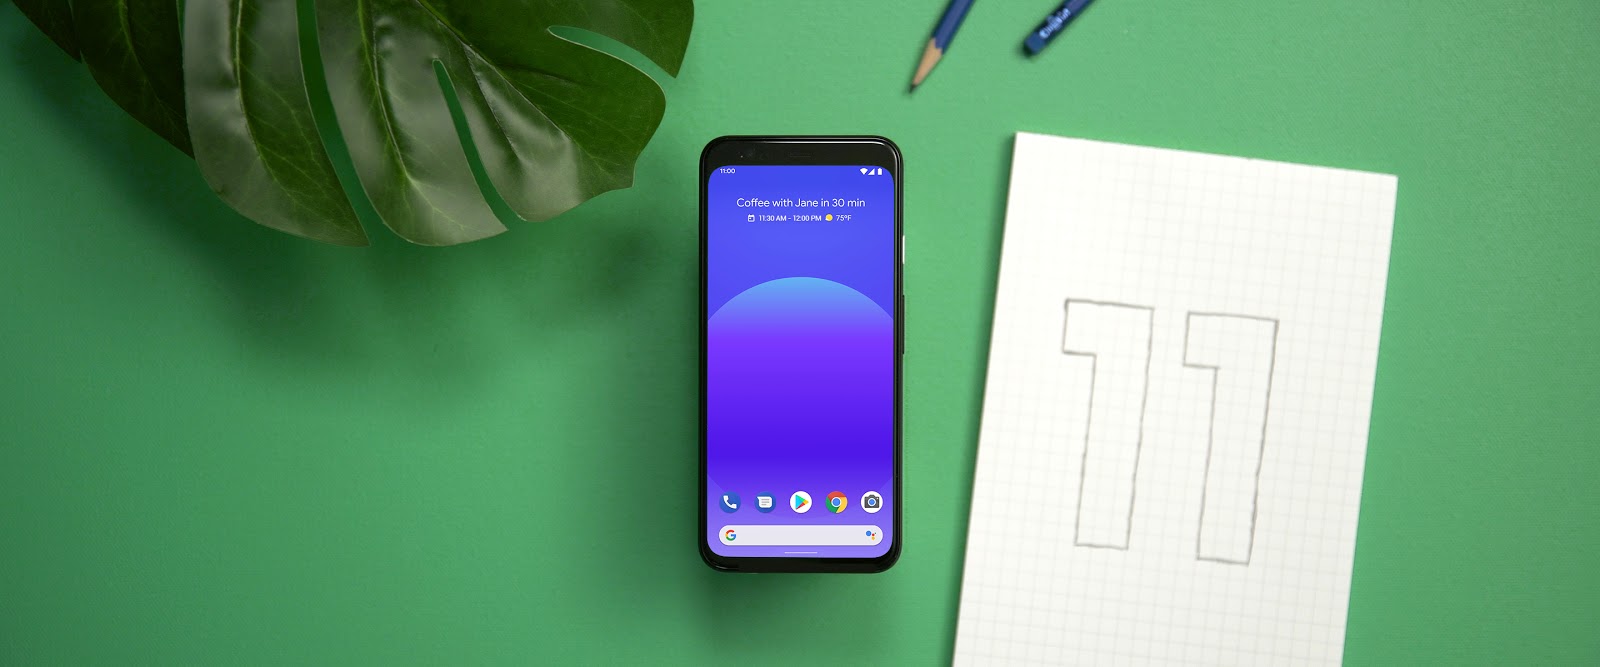 Android 11 : la bêta publique enfin disponible